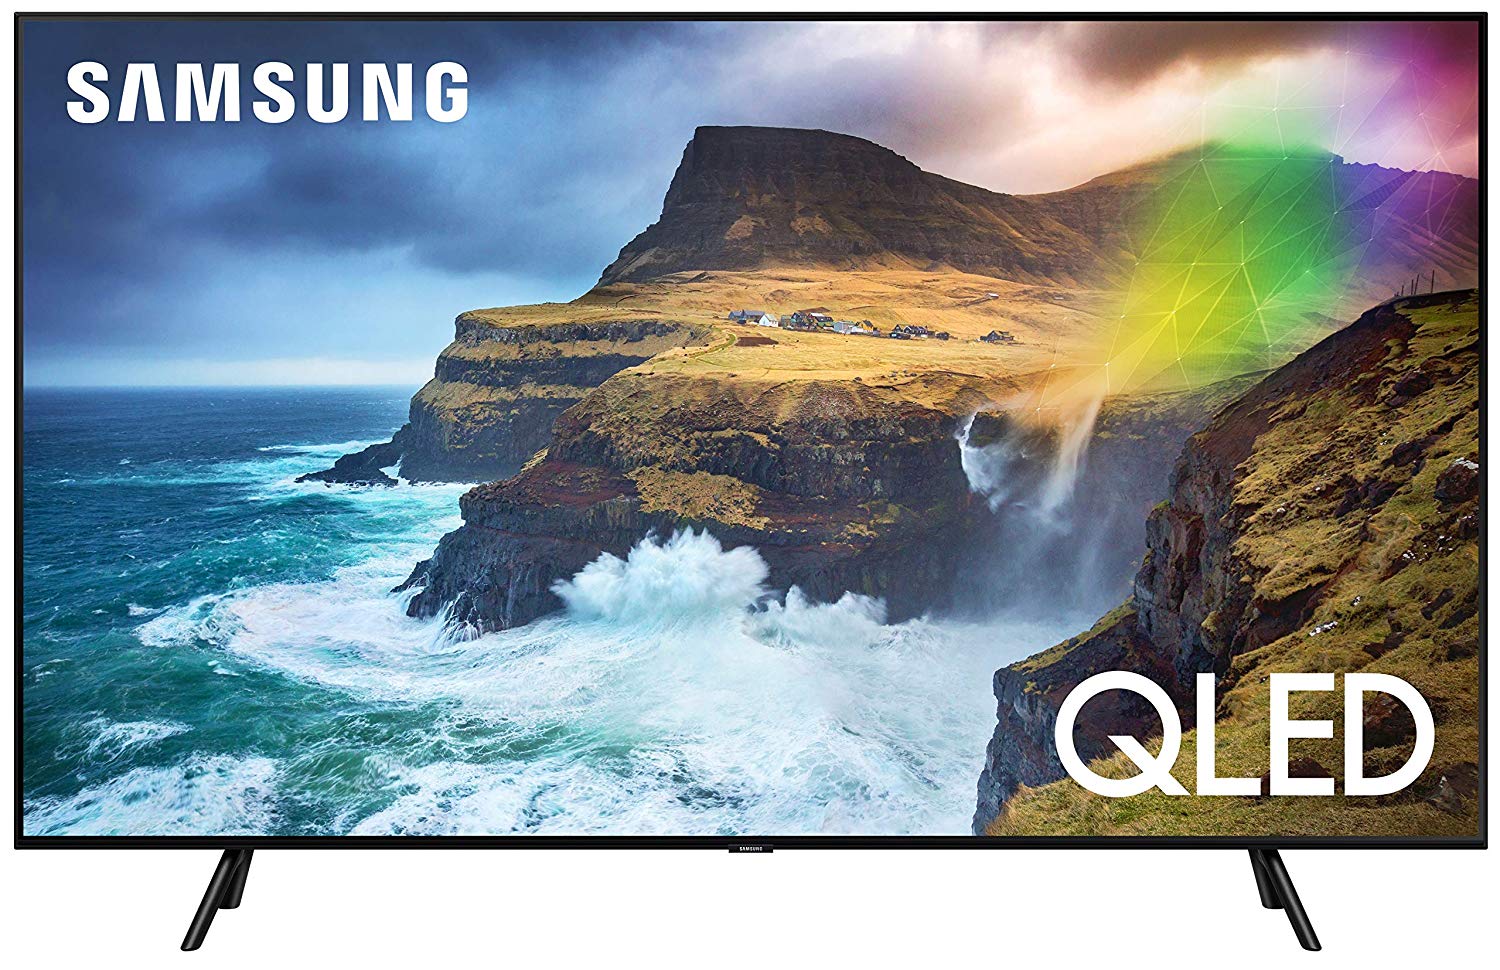 Samsung Q70R 65 inch